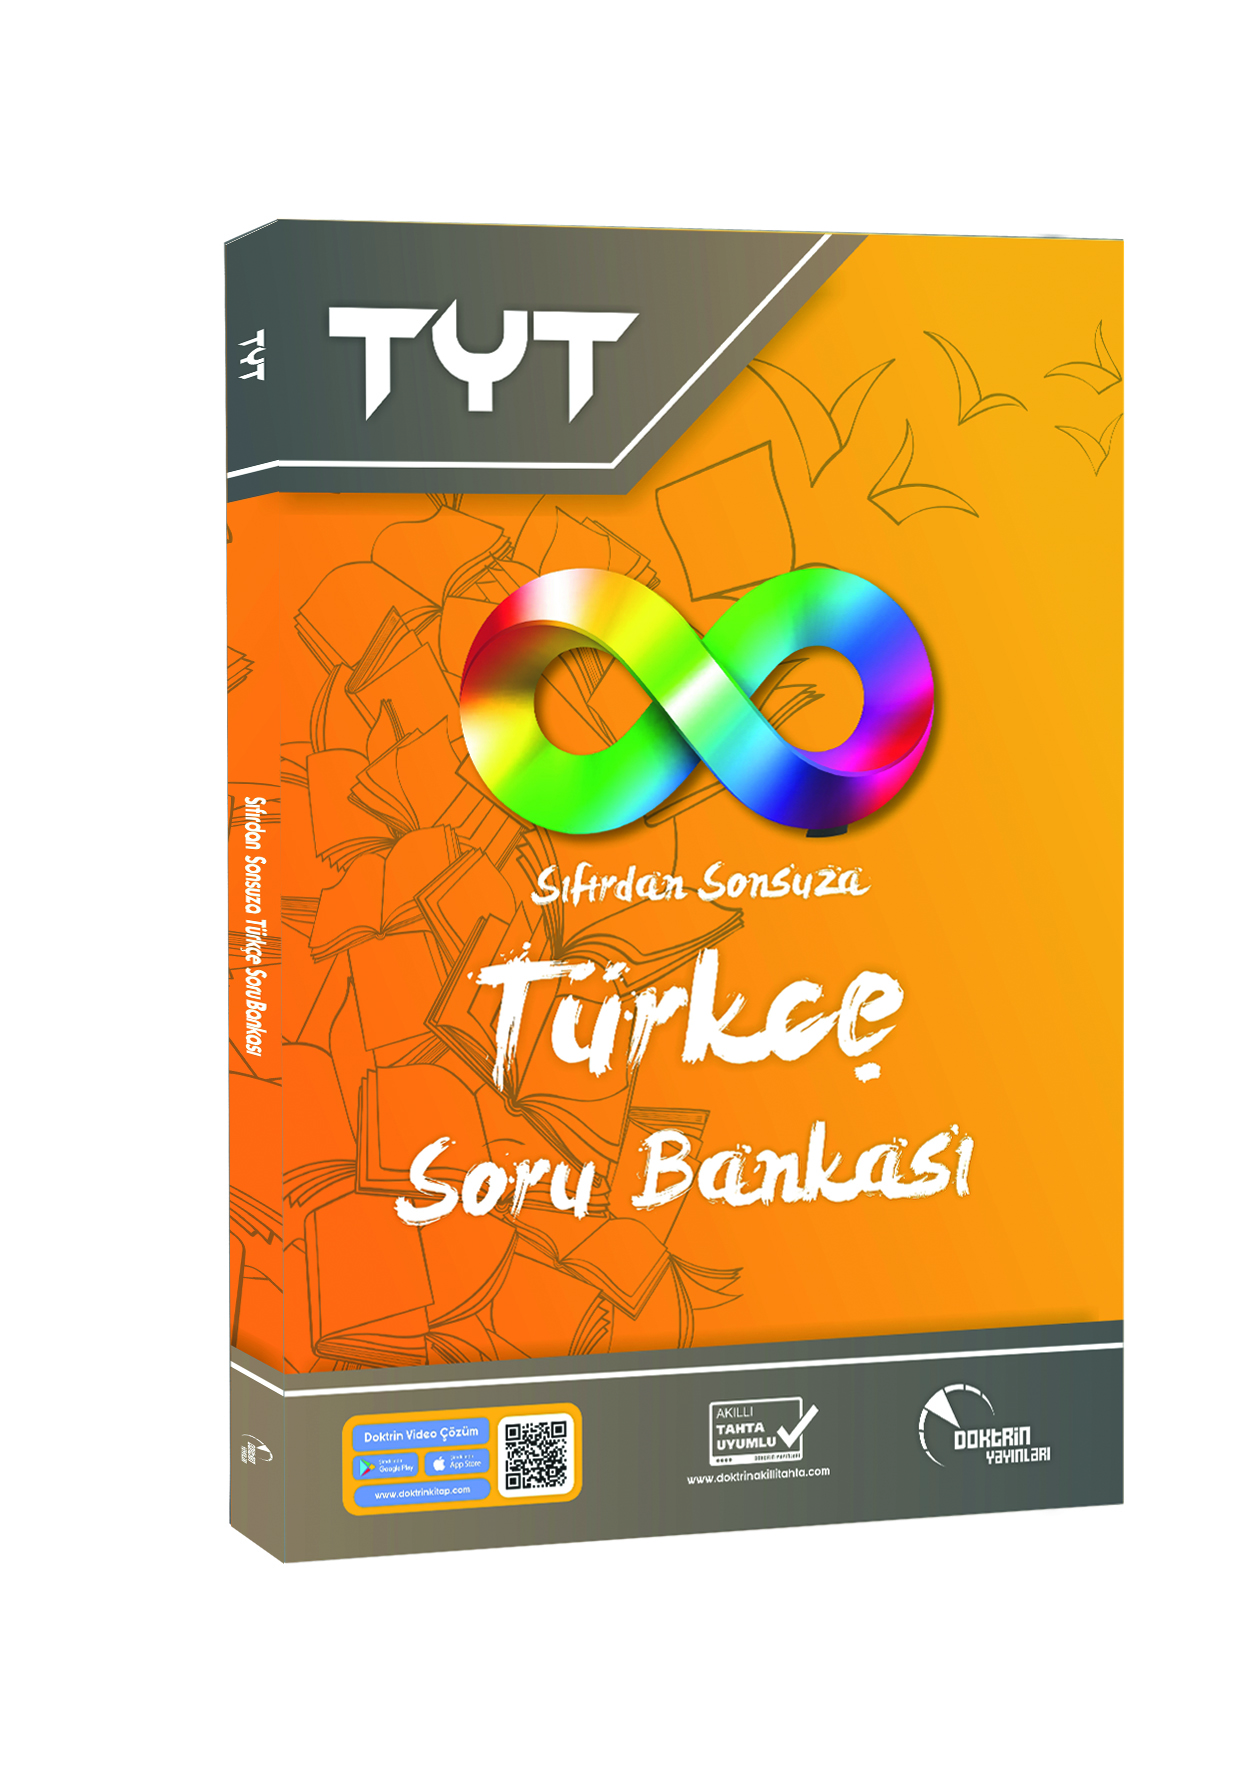 TYT Sıfırdan Sonsuza Türkçe Soru Bankası